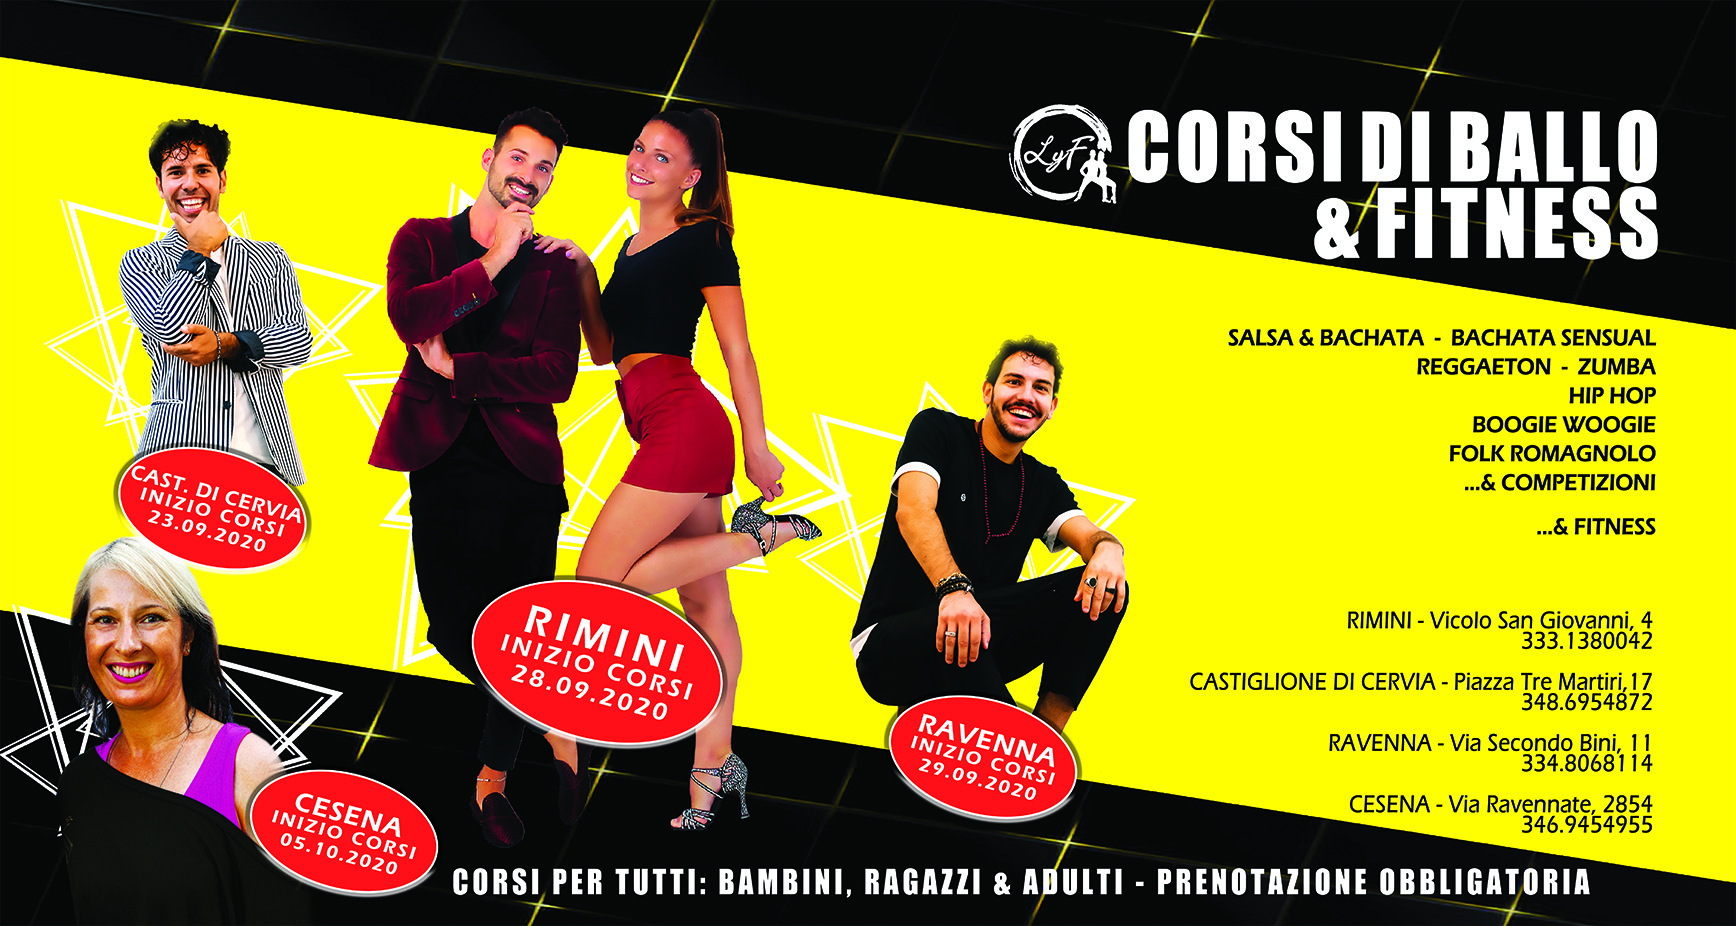 Nuovi corsi di ballo a Rimini, Cesena, Castiglione di Cervia e Ravenna - Settembre 2020